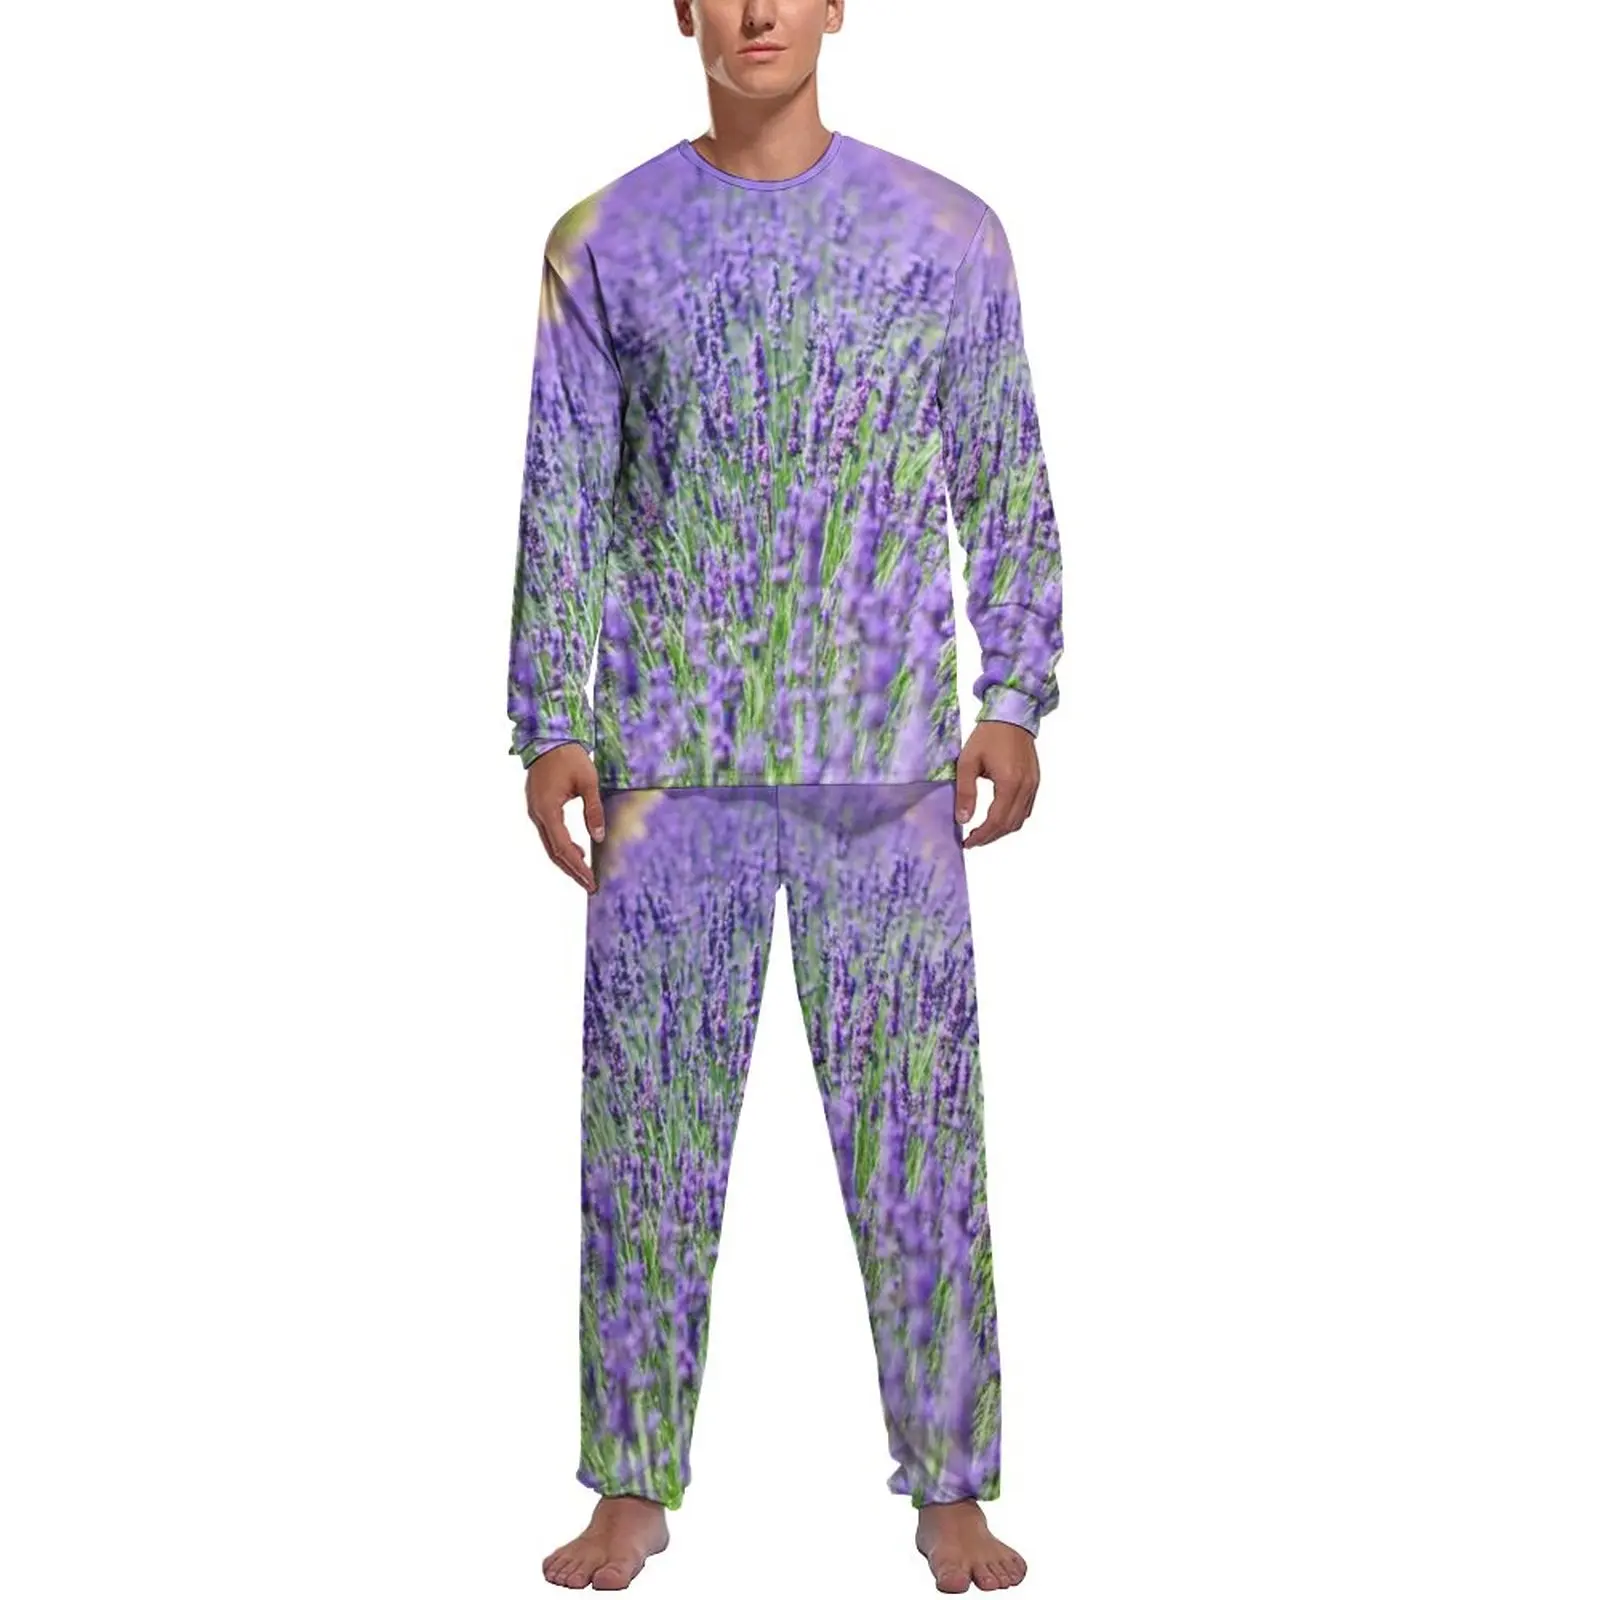 Fields of Lavender Pajamas Winter Purple Flowers Print Sleep Sleepwear Men Two Piece Graphic Long Sleeve Retro Pajama Sets